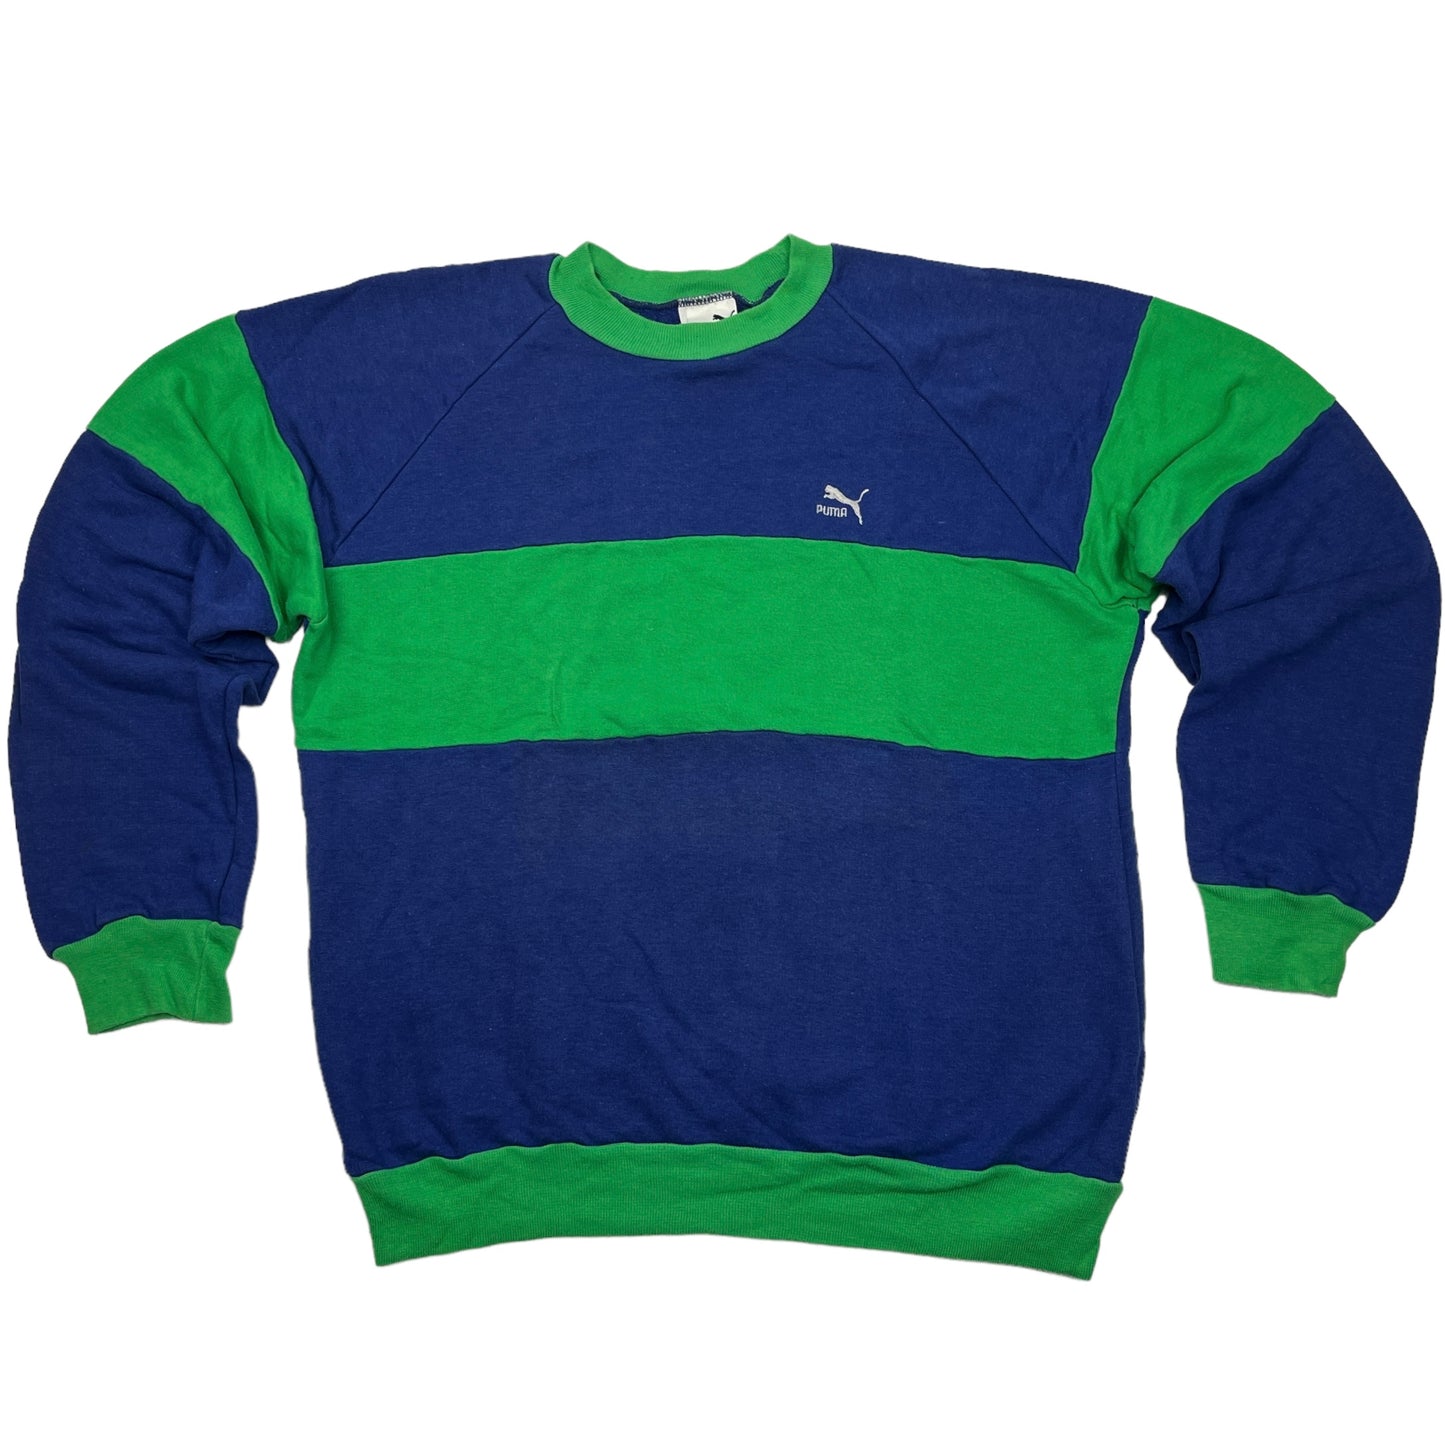 01274 Puma Vintage 80s Sweater